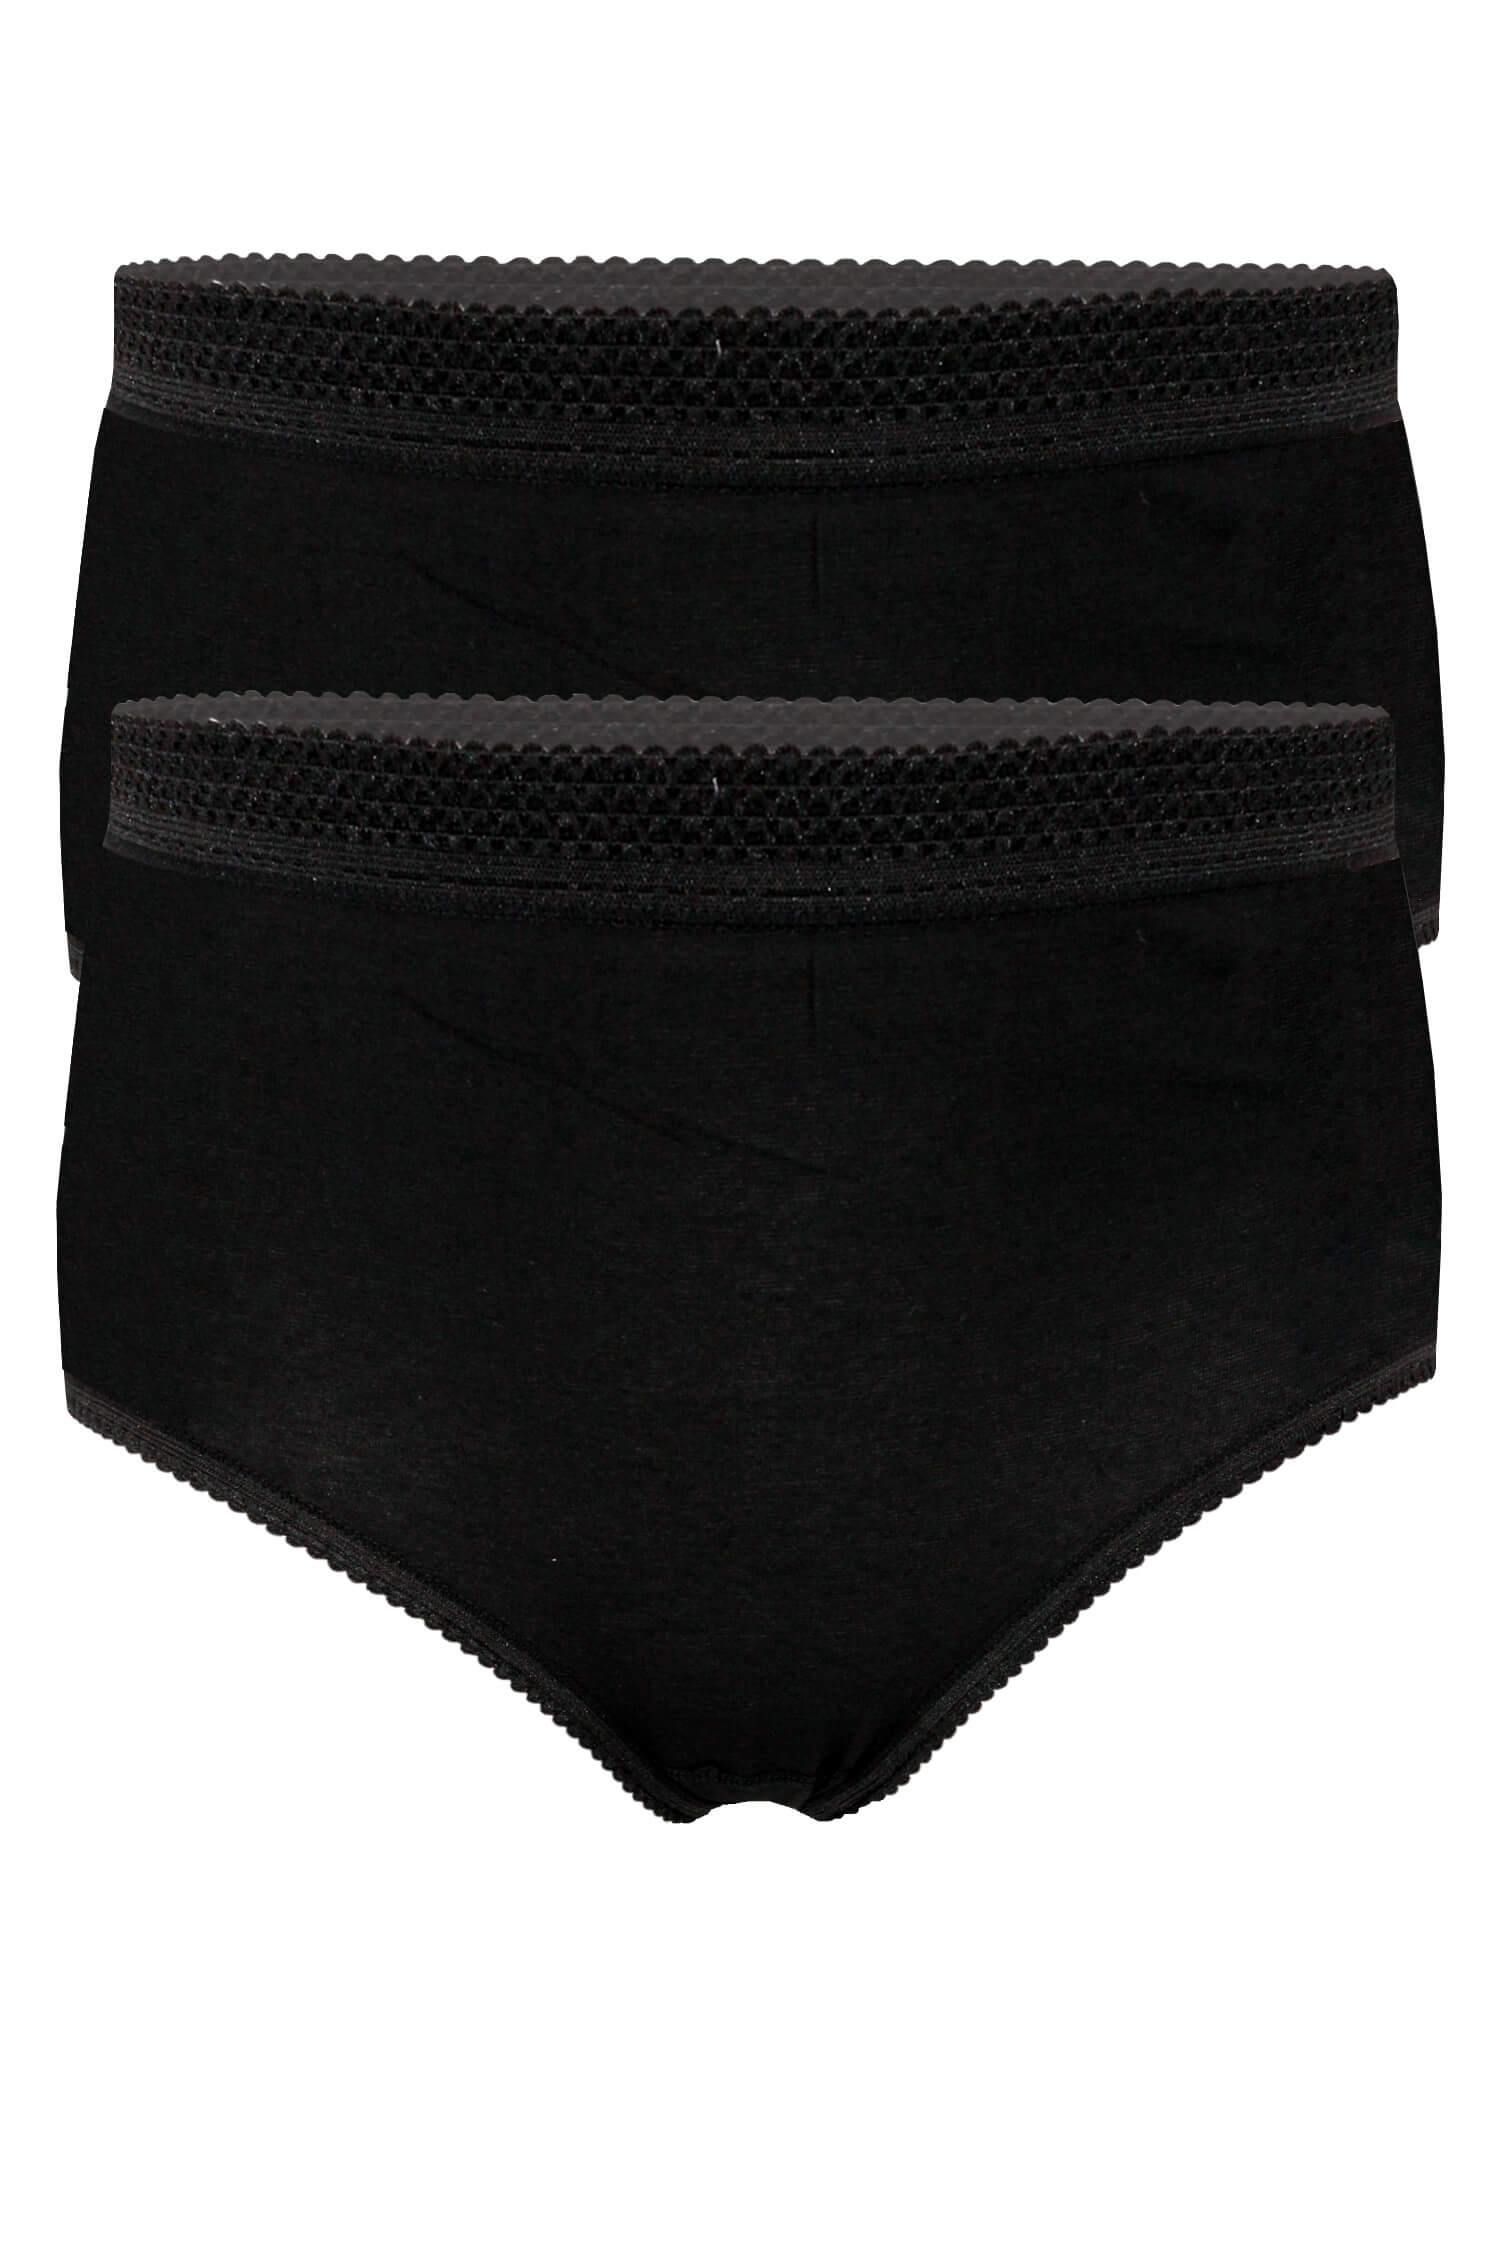 Apolena bavlněné kalhotky s vysokým pasem 2ks XXL černá